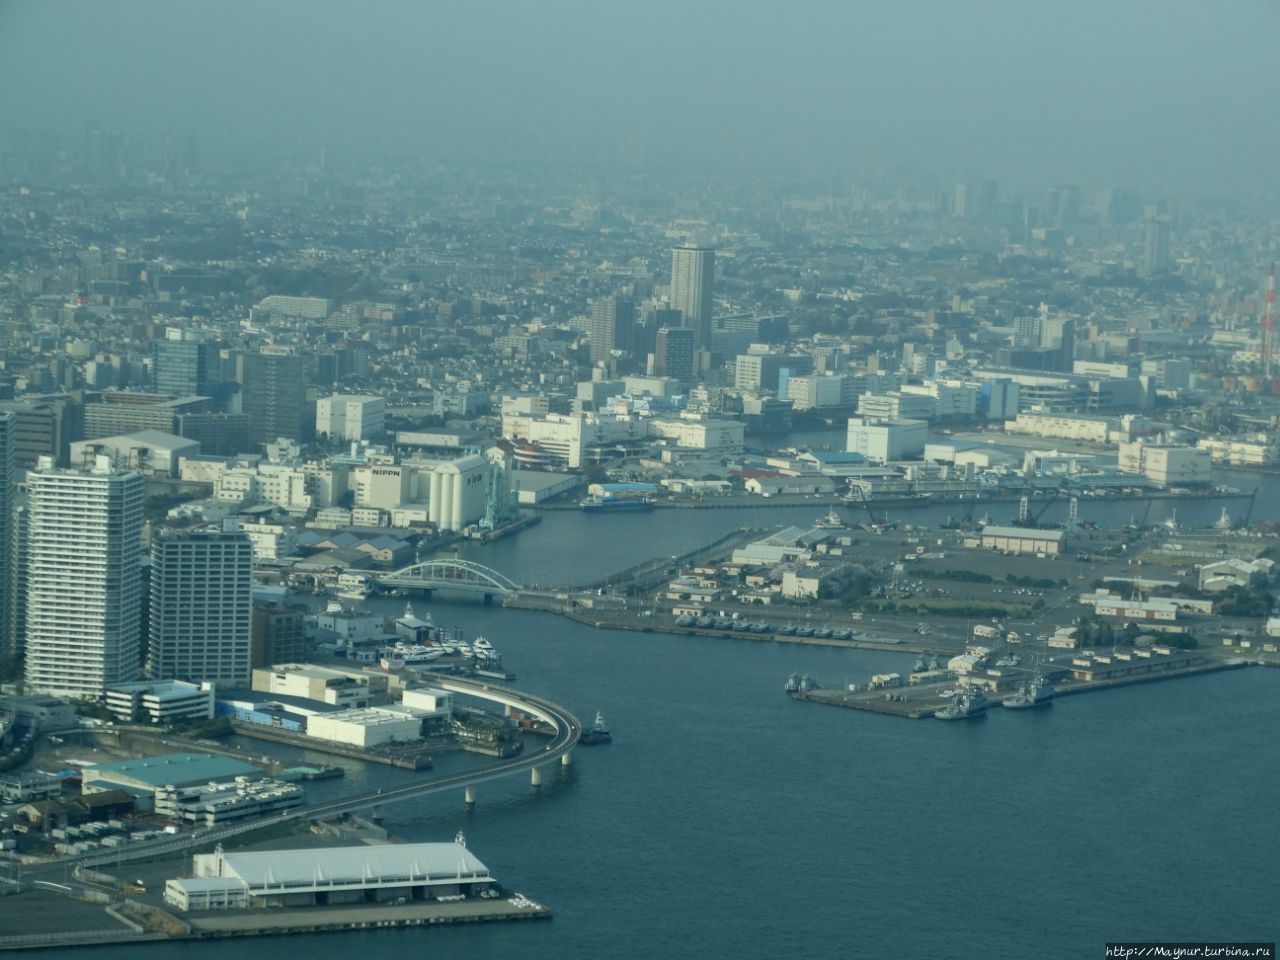 Иокогама  вчера  и  сегодня Иокогама, Япония